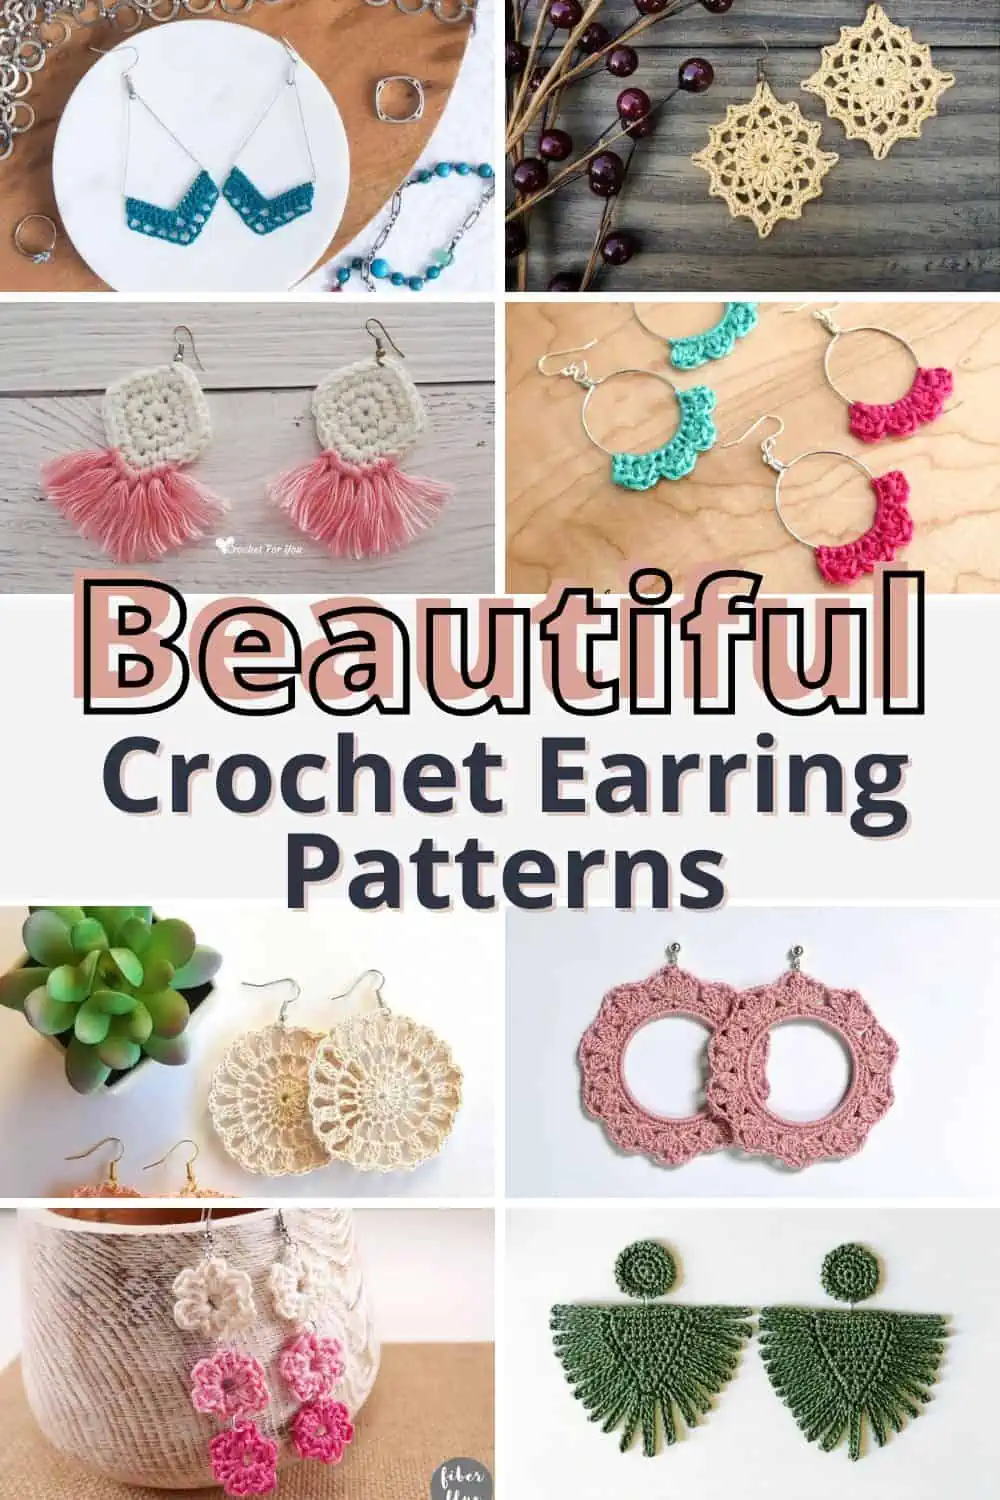 USA star crochet earrings pattern